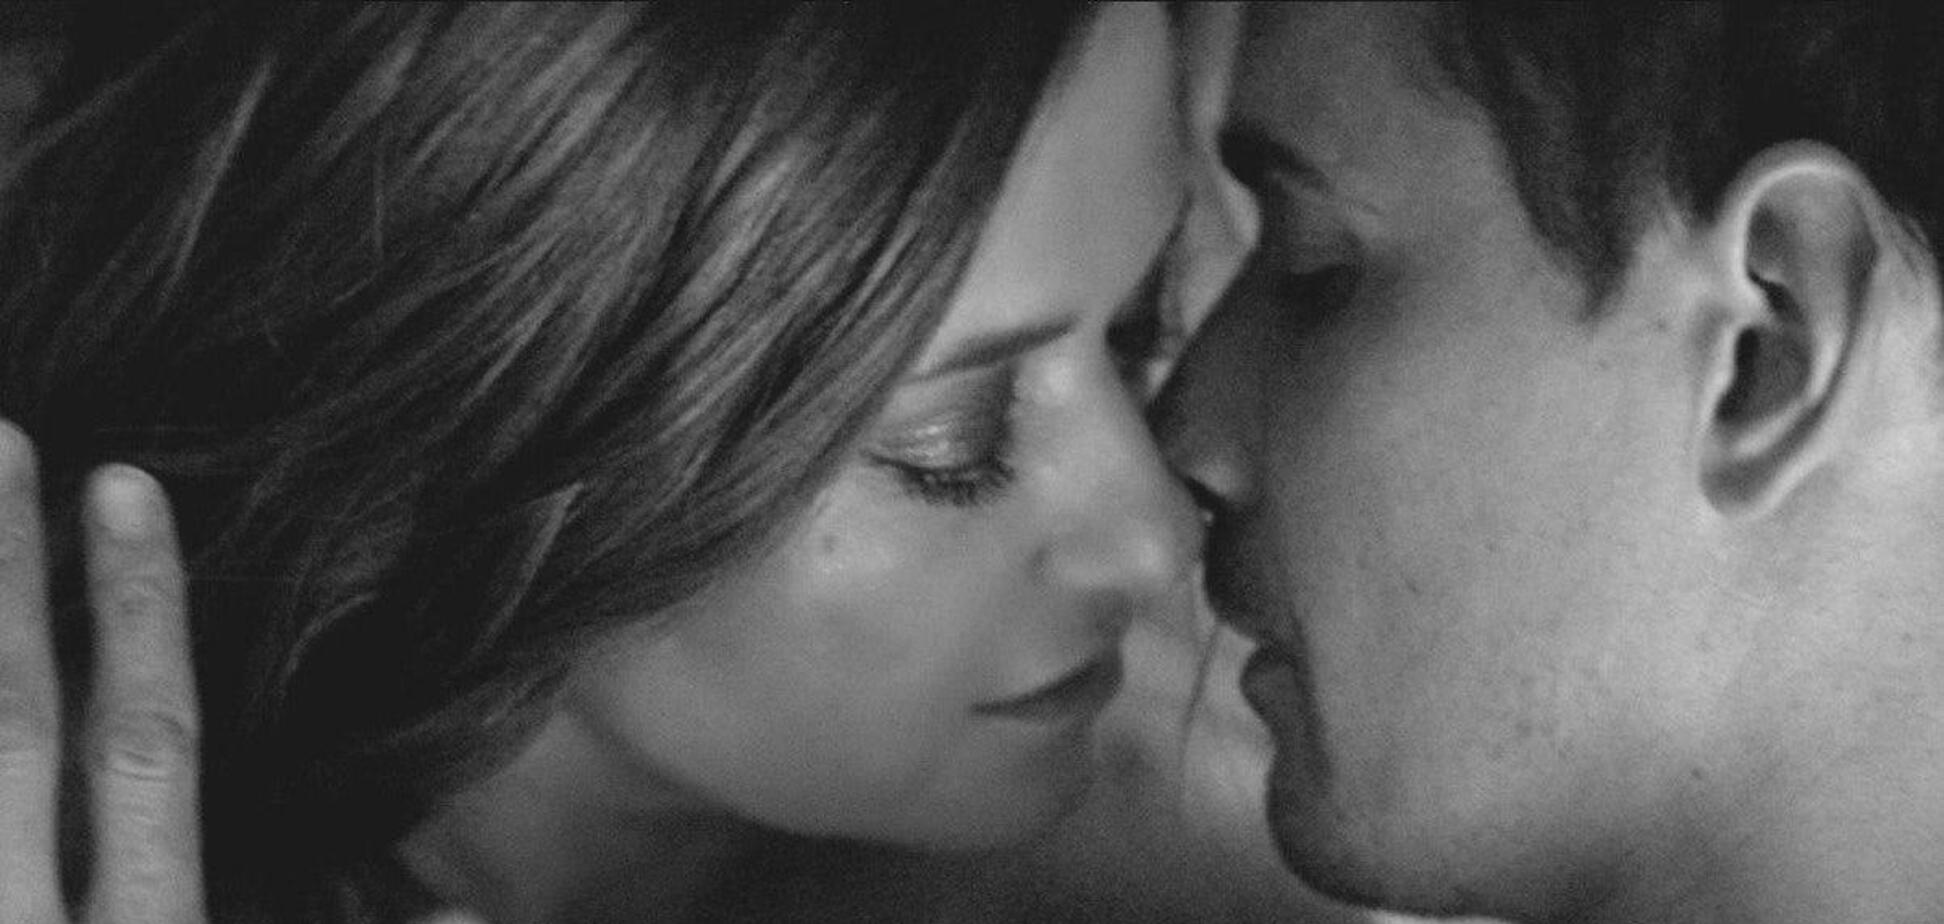 Могилевская страстно целовалась с мужчиной в новом видео